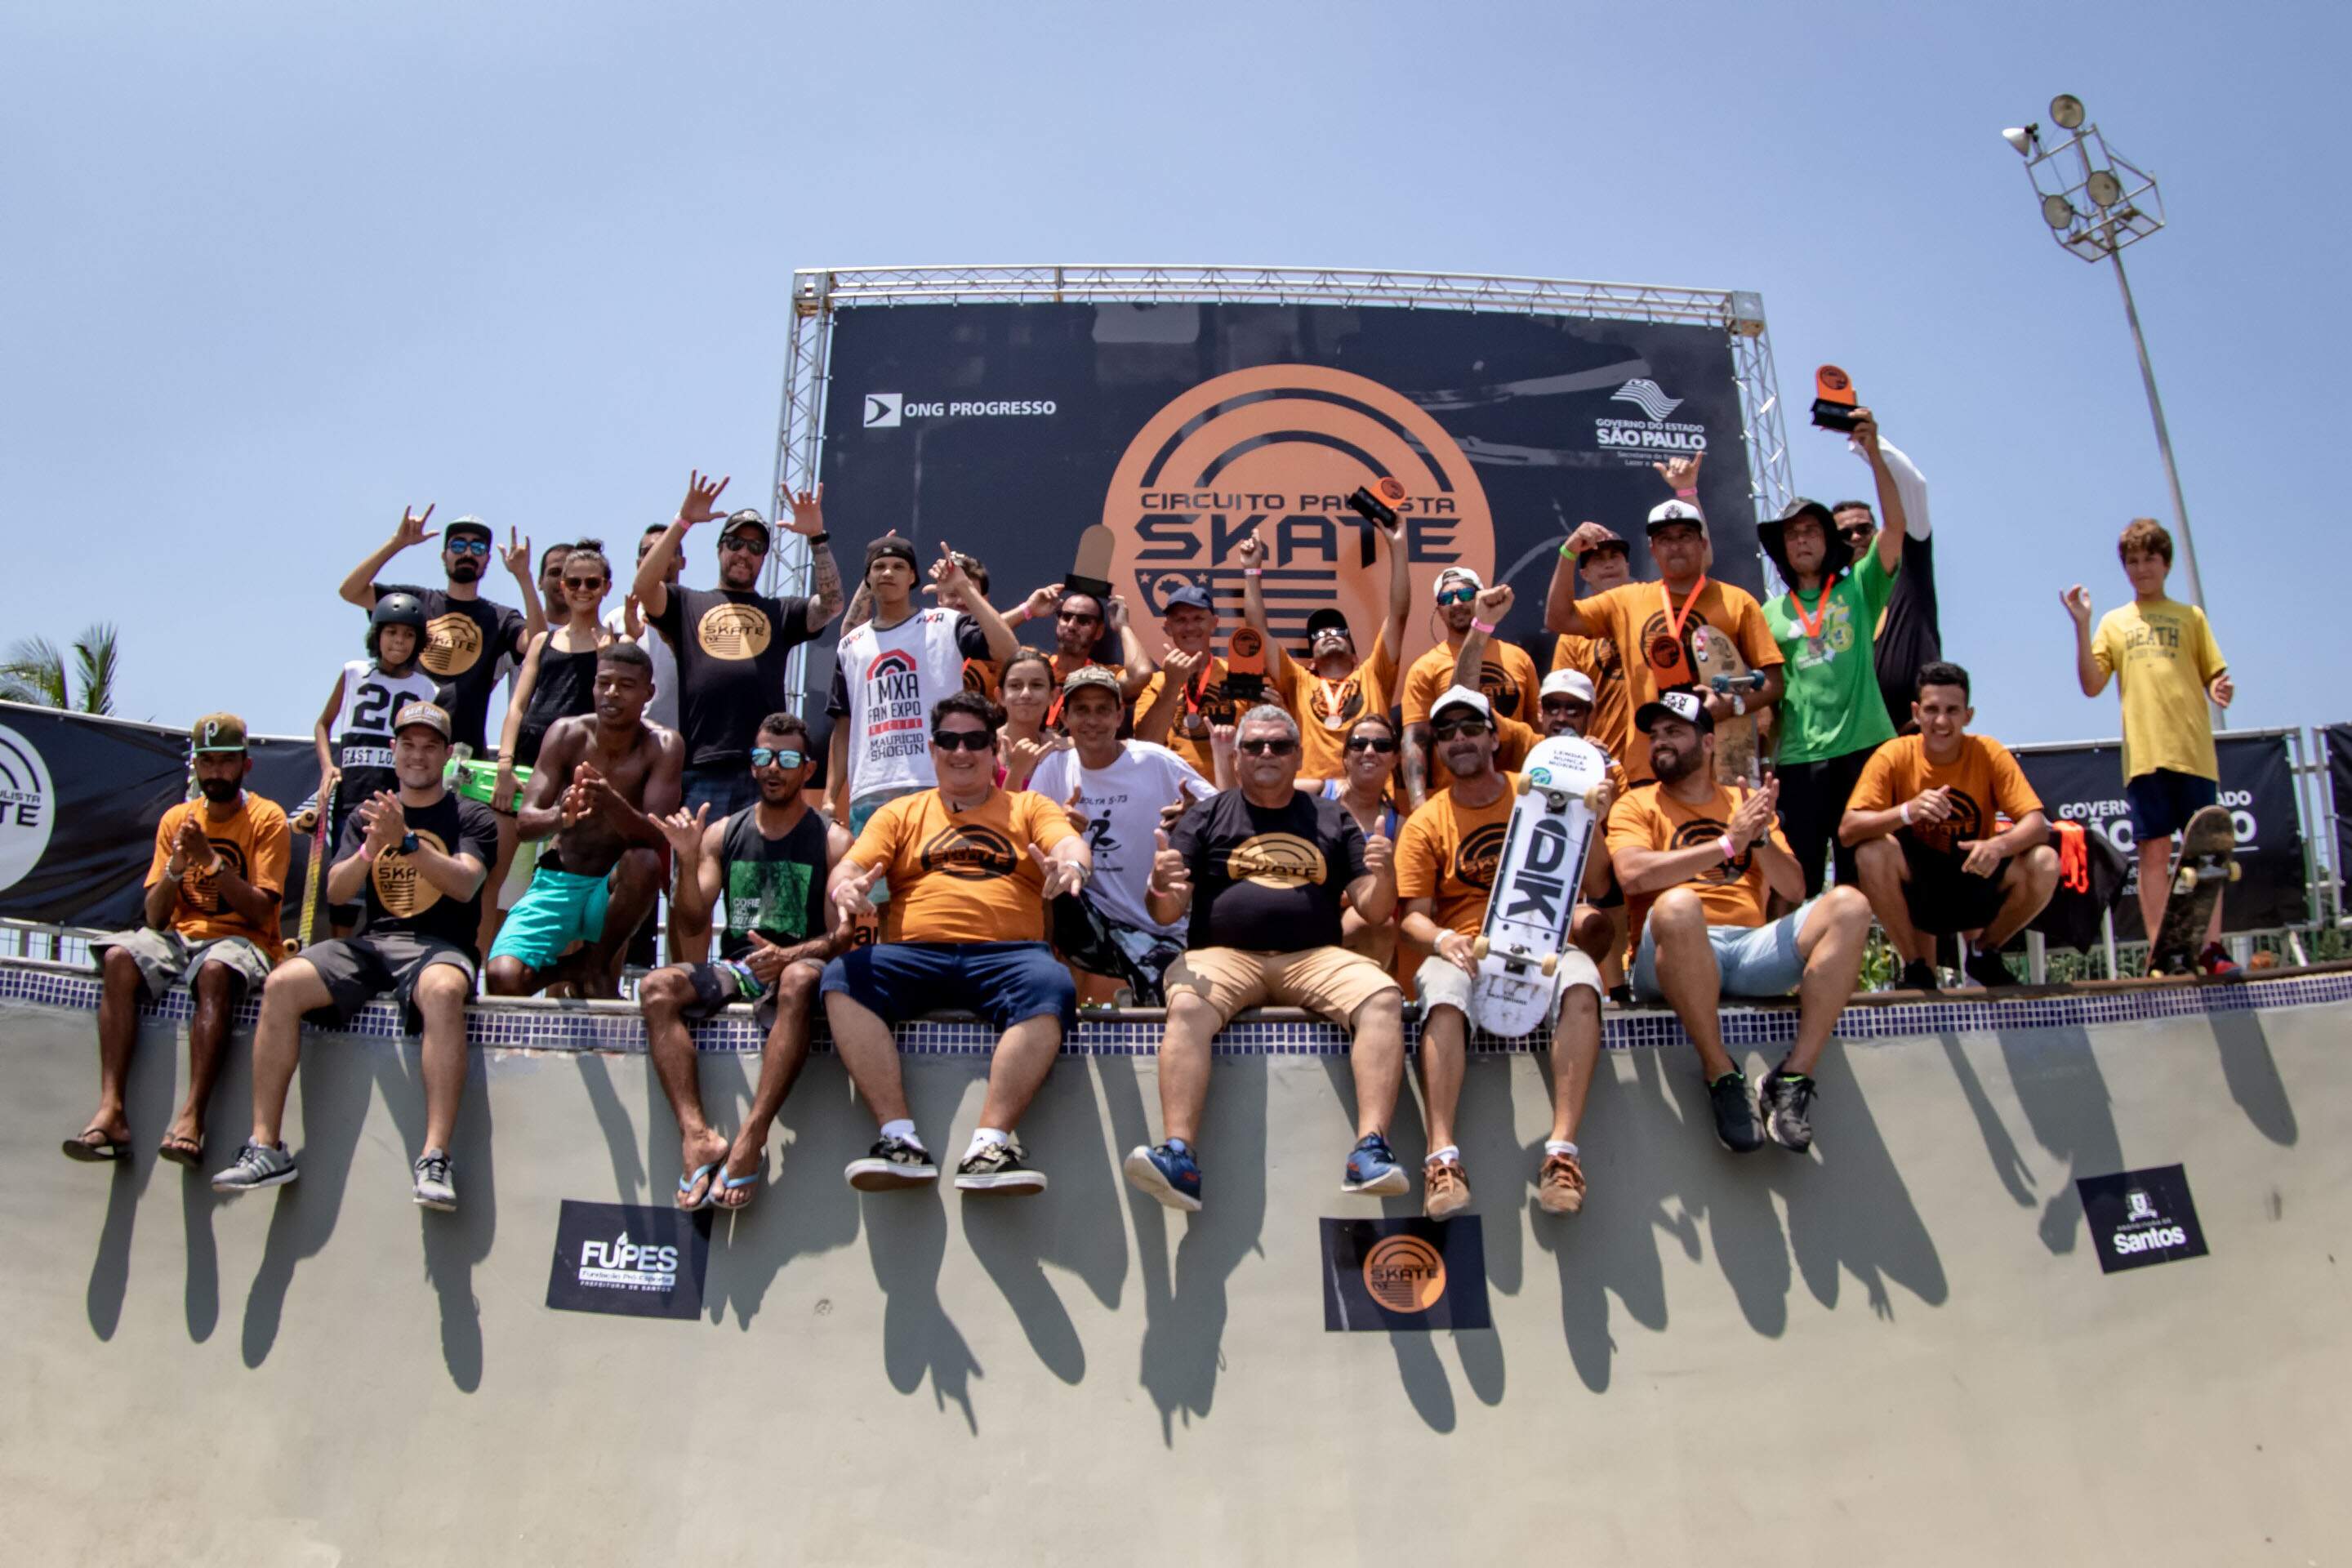 Campeonato Paulista de Skate, disputado em Santos, encerrou neste domingo